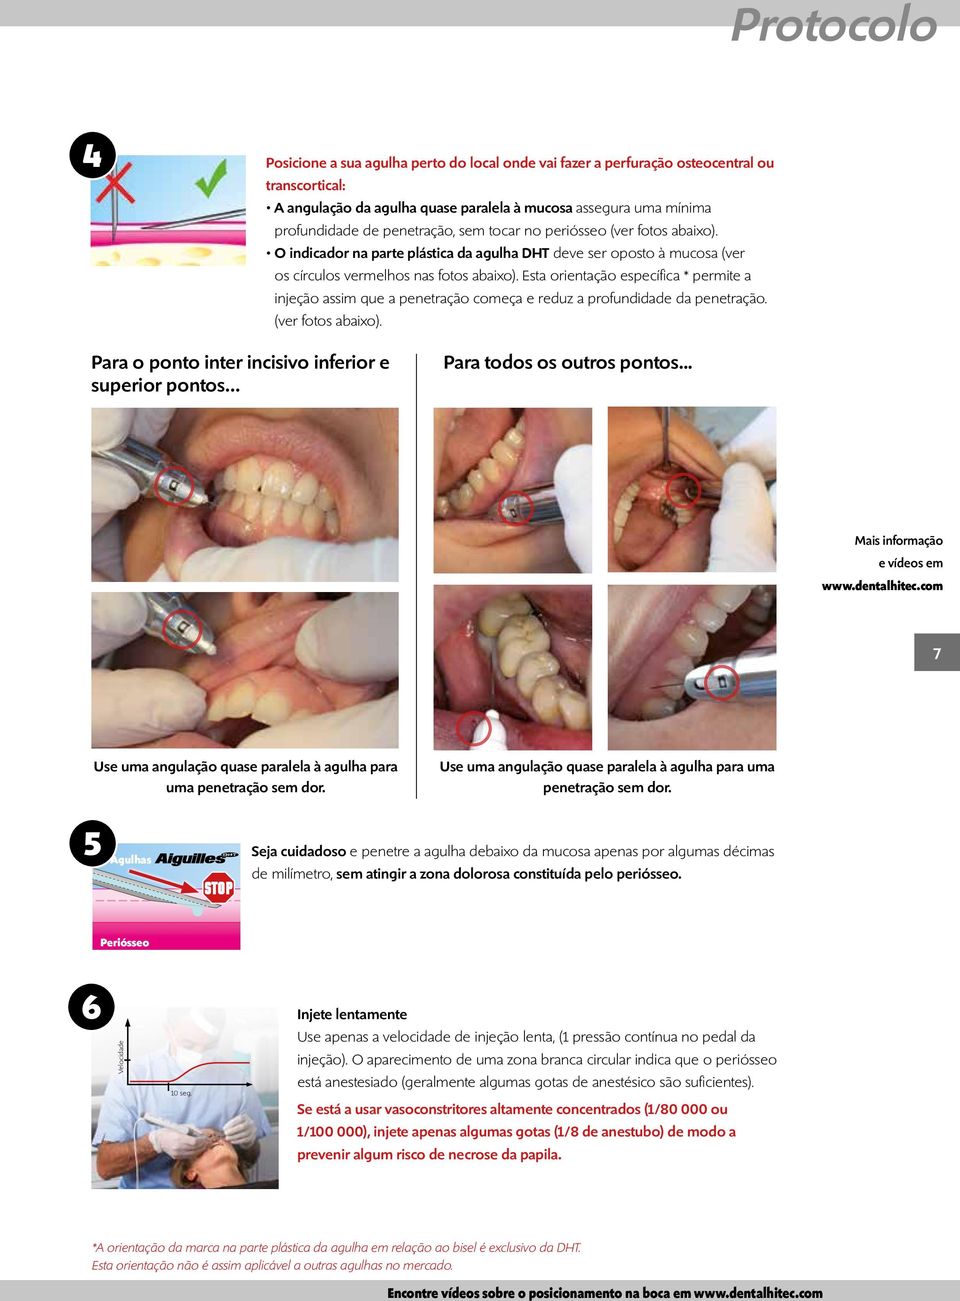 Esta orientação específica * permite a injeção assim que a penetração começa e reduz a profundidade da penetração. (ver fotos abaixo).